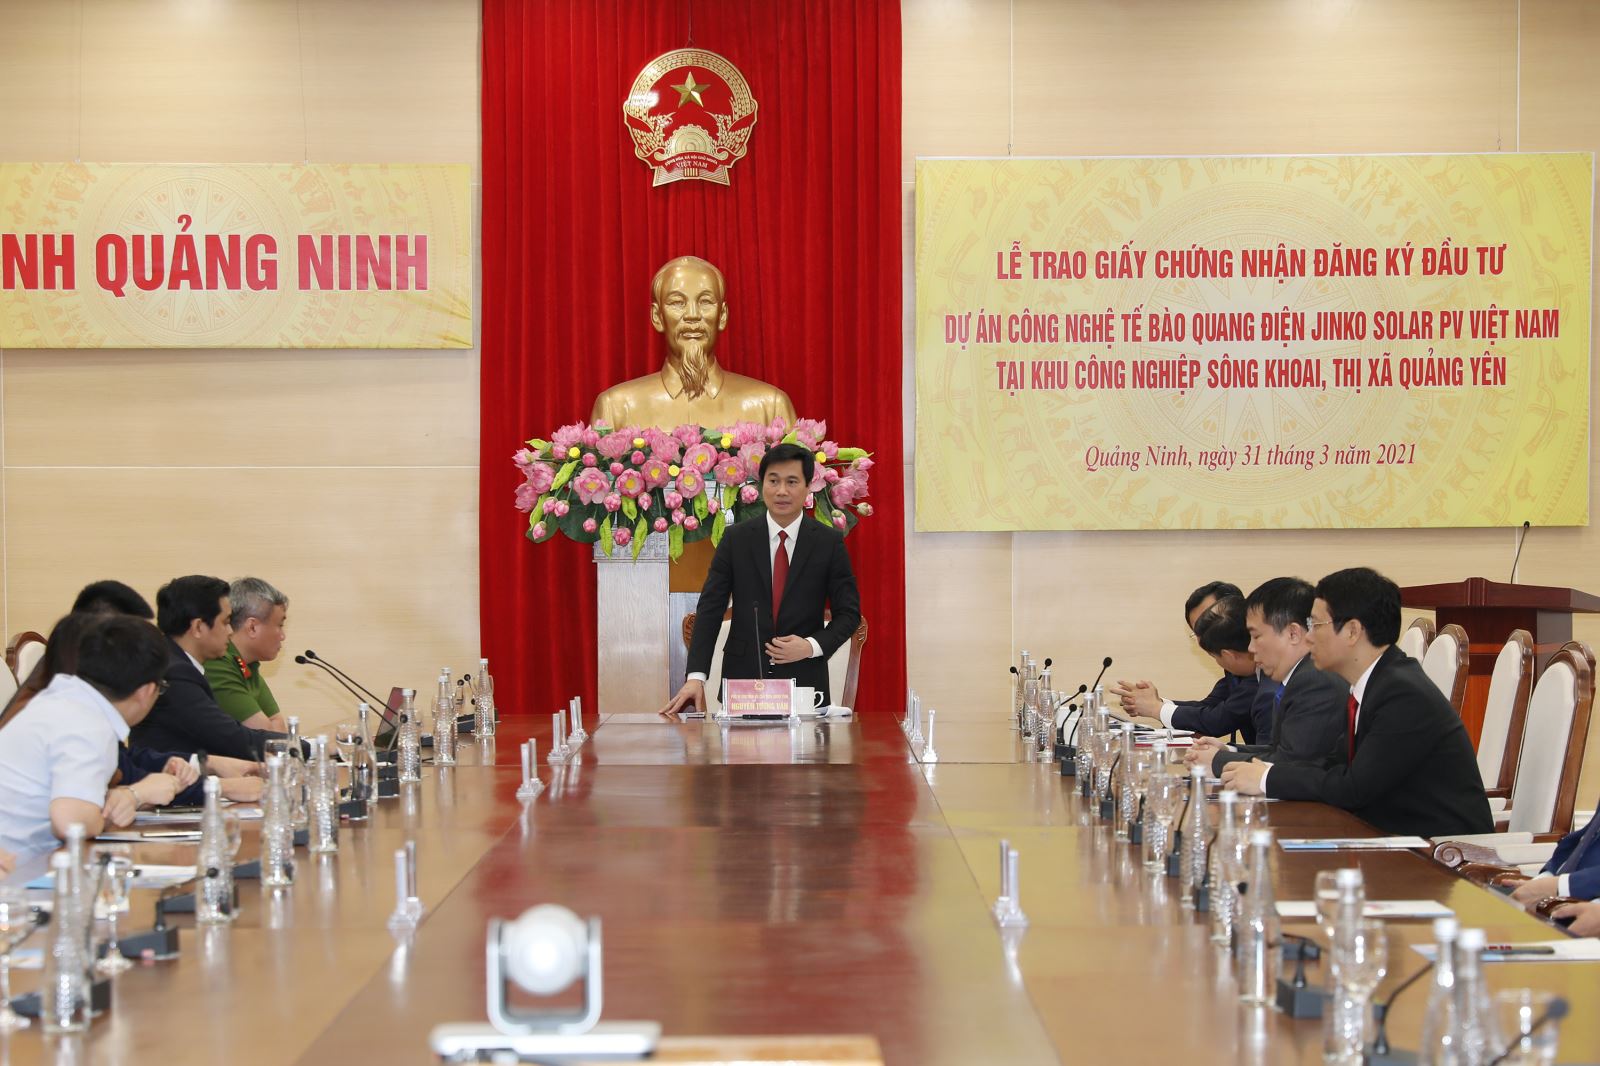 Lãnh đạo tỉnh Quảng Ninh trao giấy chứng nhận đầu tư trị giá 500 triêu USD